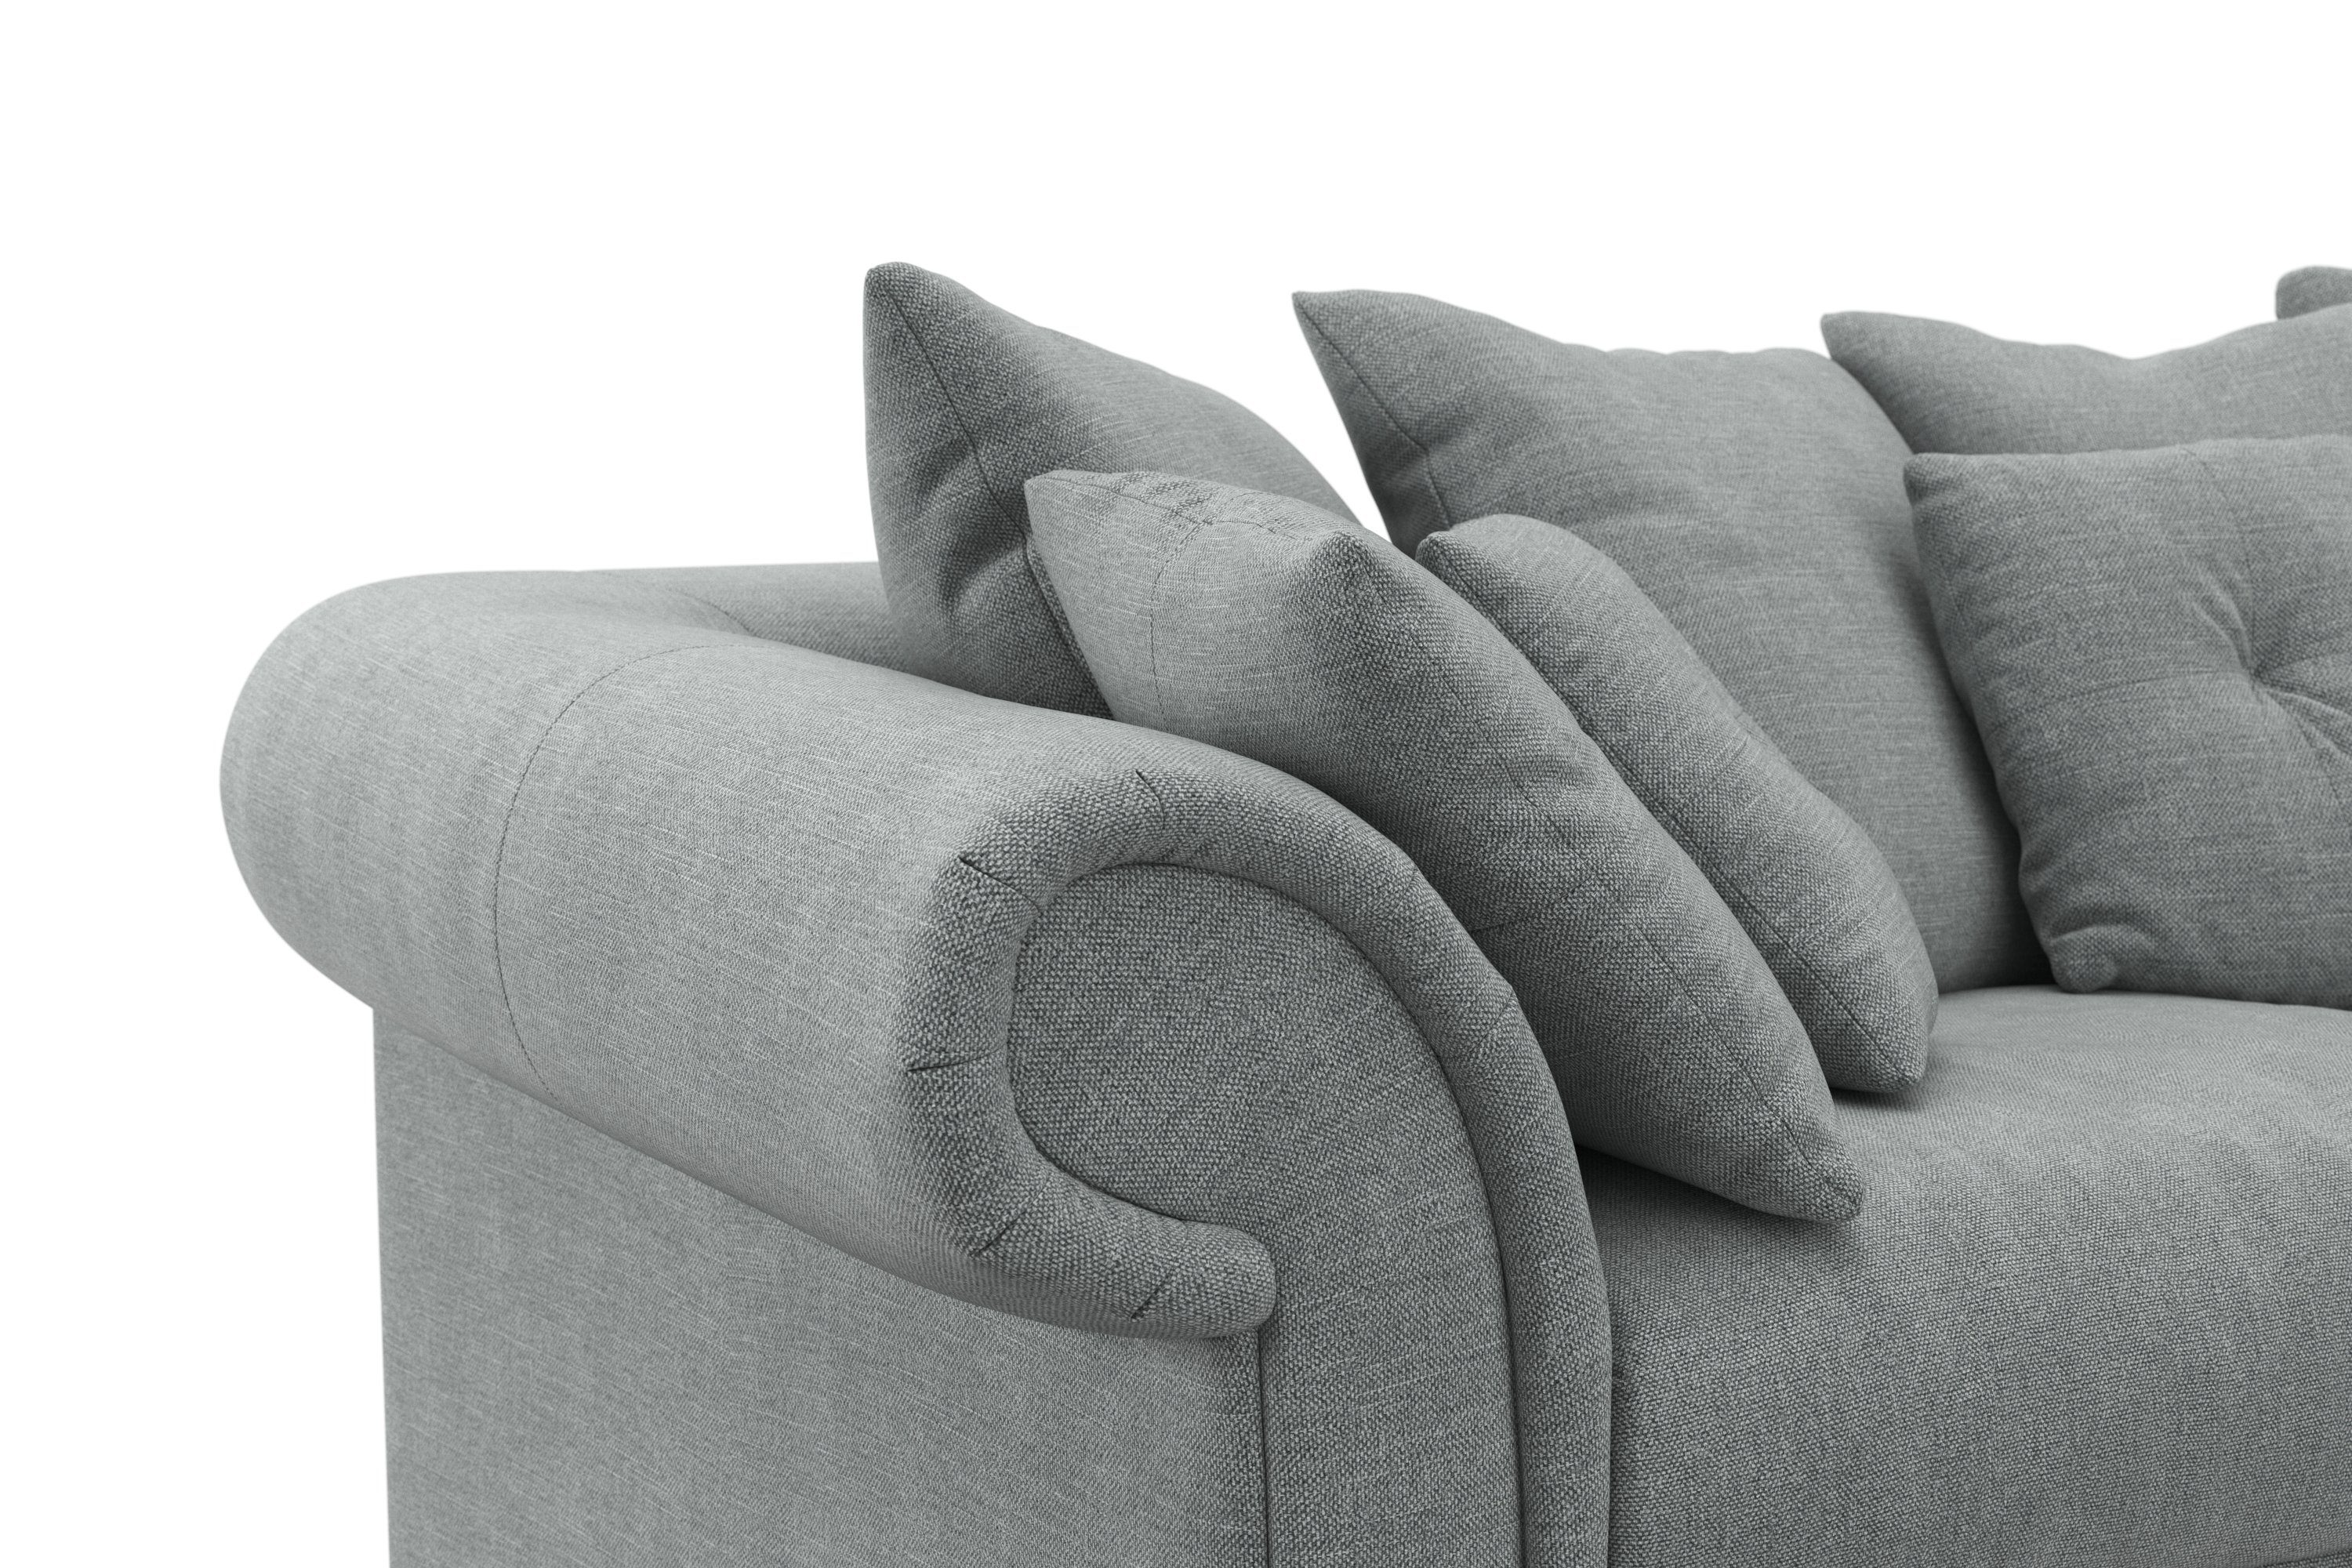 Home affaire Big-Sofa Queenie Megasofa, viele kuschelige Kissen mit weichem und Sitzkomfort Teile, Design, 2 zeitlosem